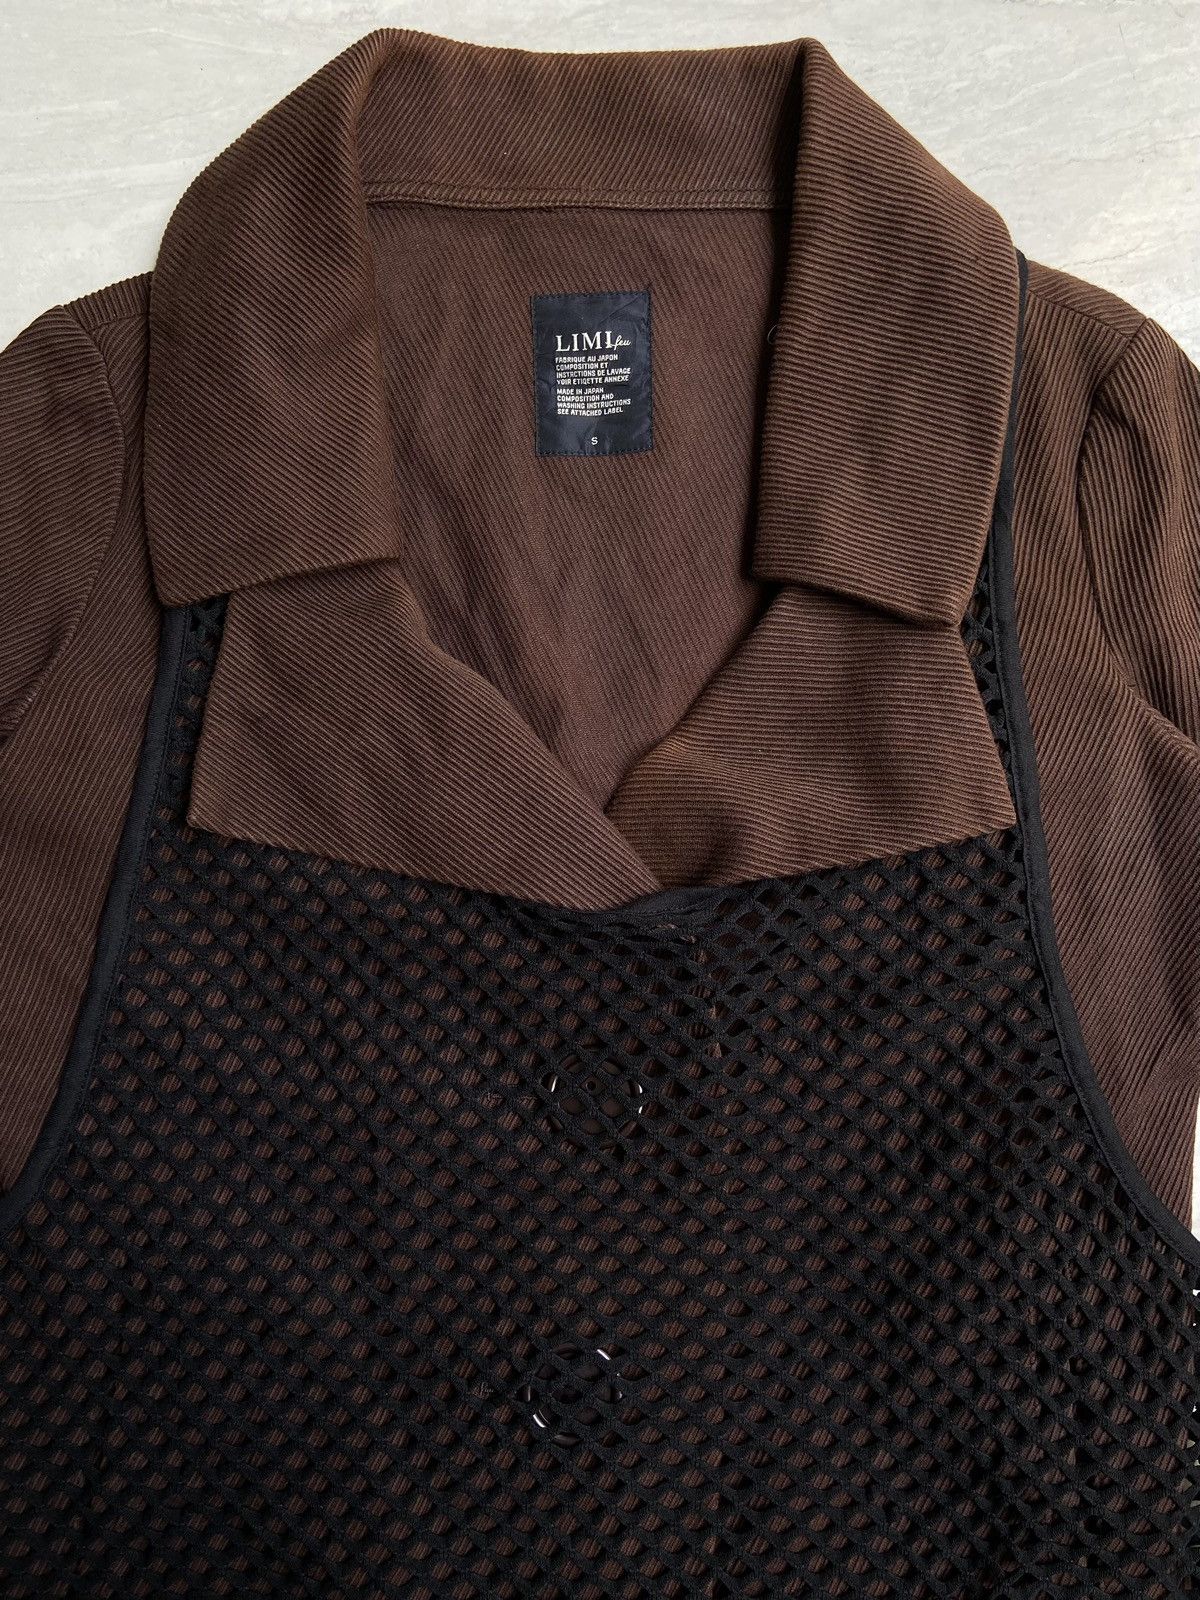 Yohji Yamamoto LIMI FEU Brown Blazer Vest Size US S / EU 44-46 / 1 - 9 Thumbnail